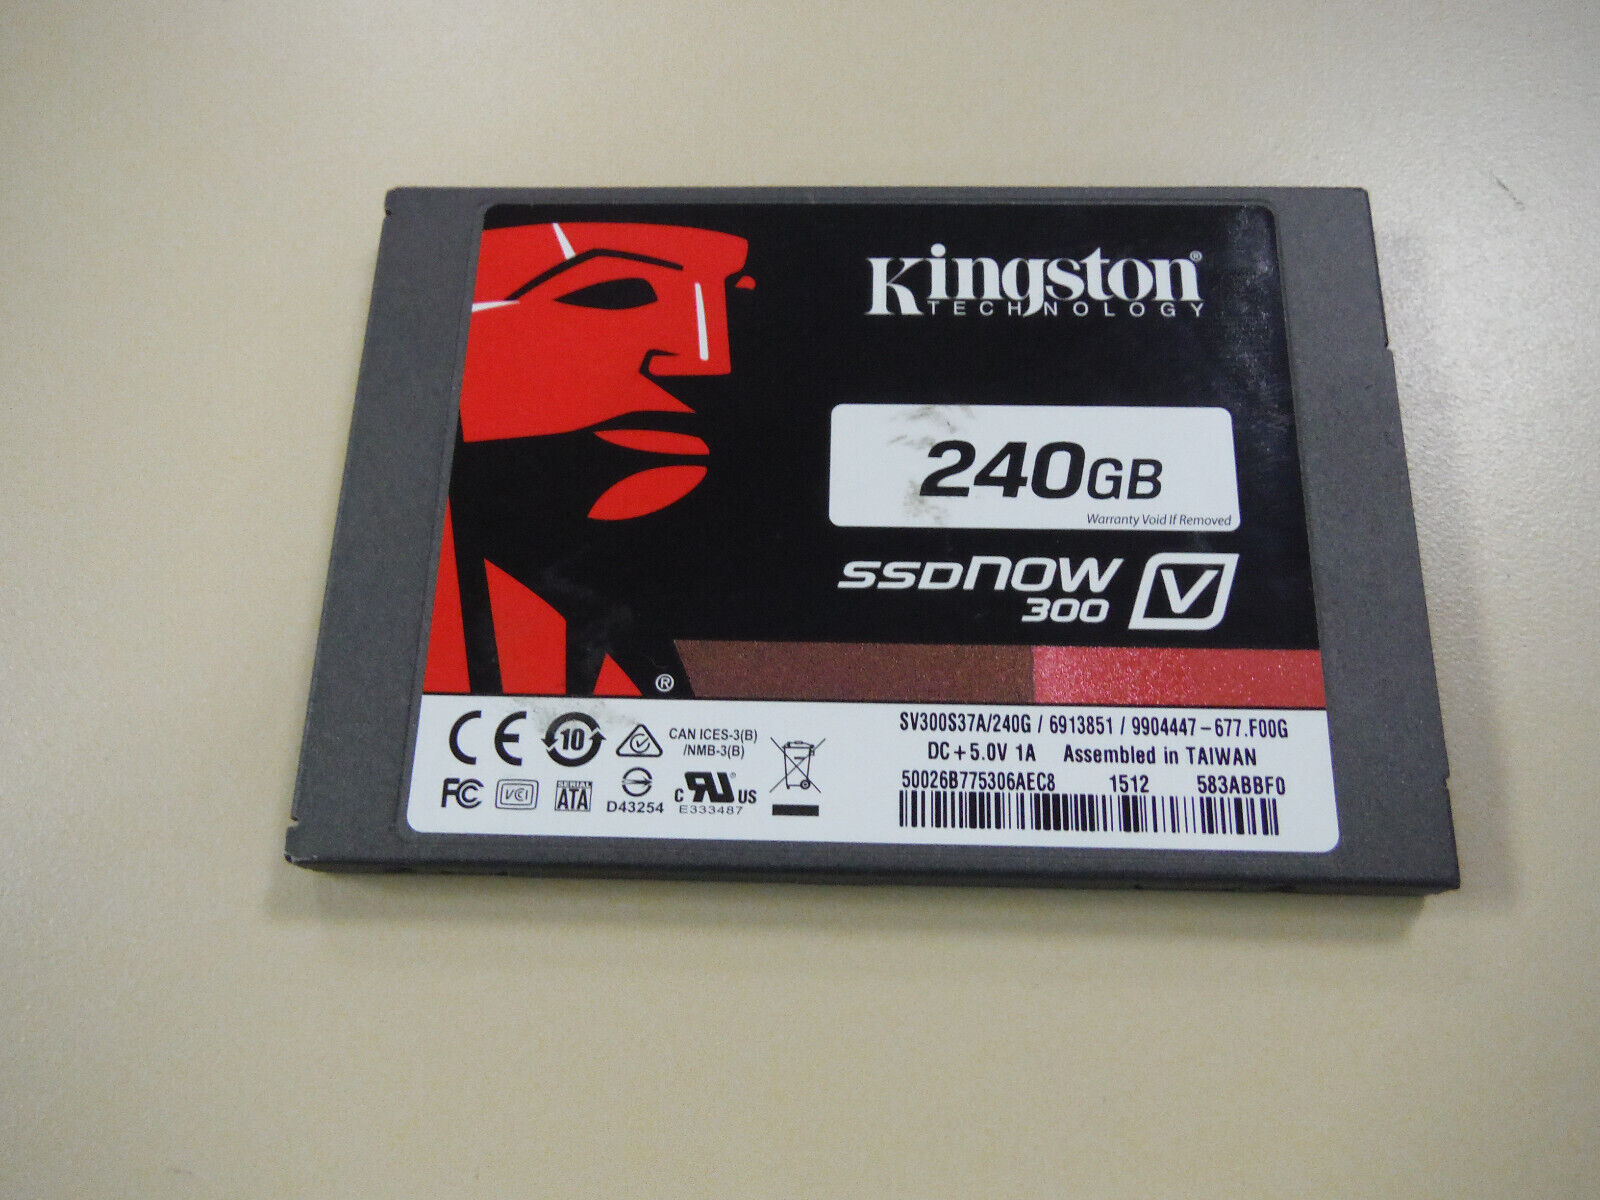 Kingston SSD V300 240GB  with Windows 10 Home 64-Bit Preloaded